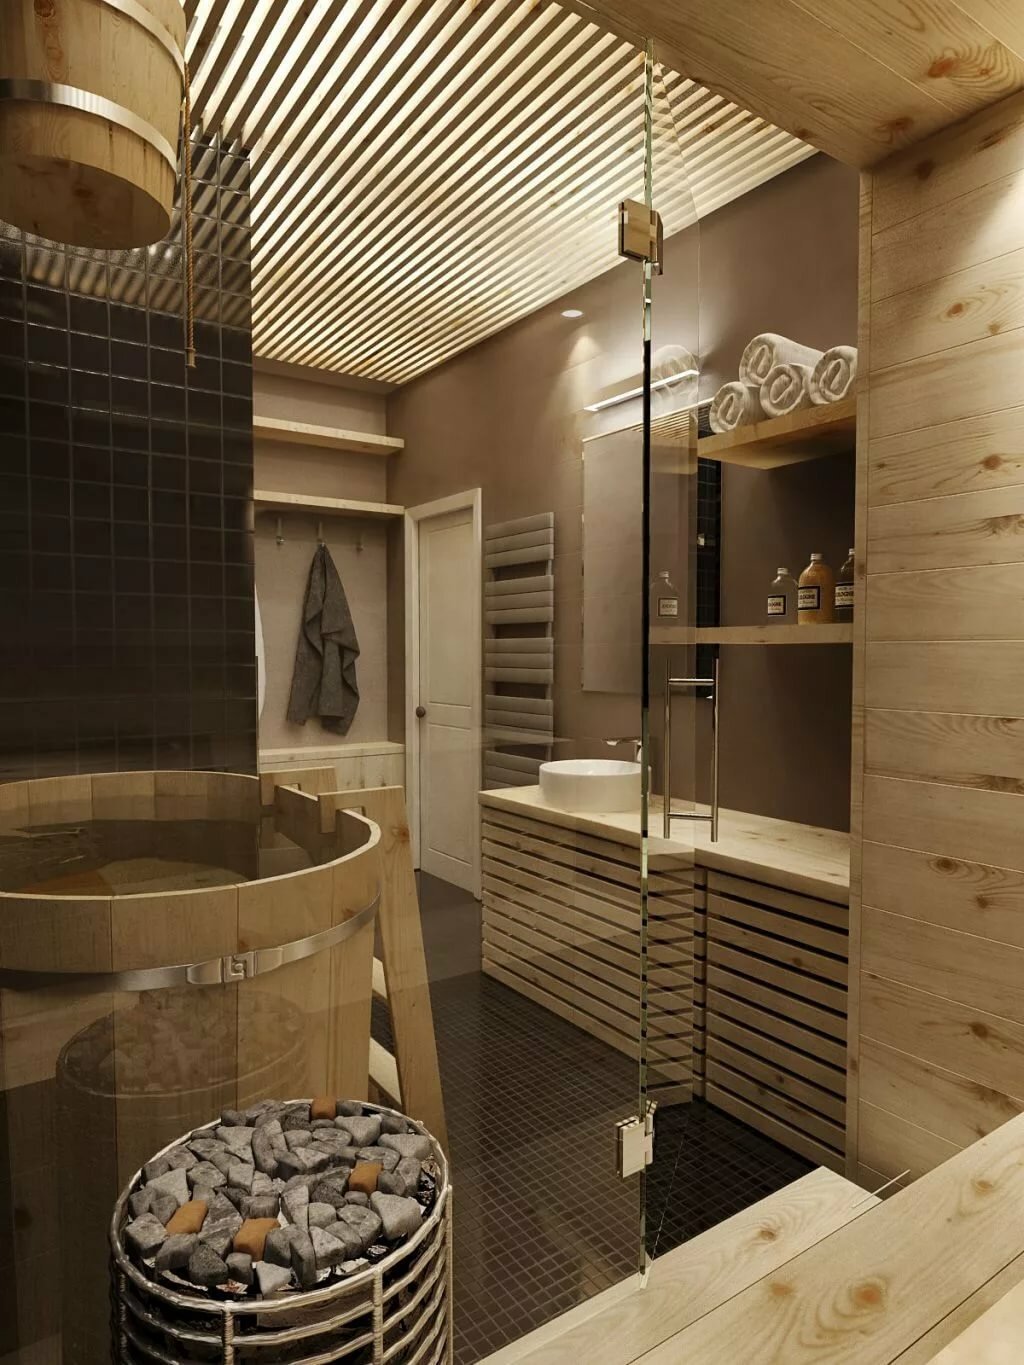 Сауна в ванной комнате - фото подборка дизайна интереьра - Интернет-журнал Inhomes